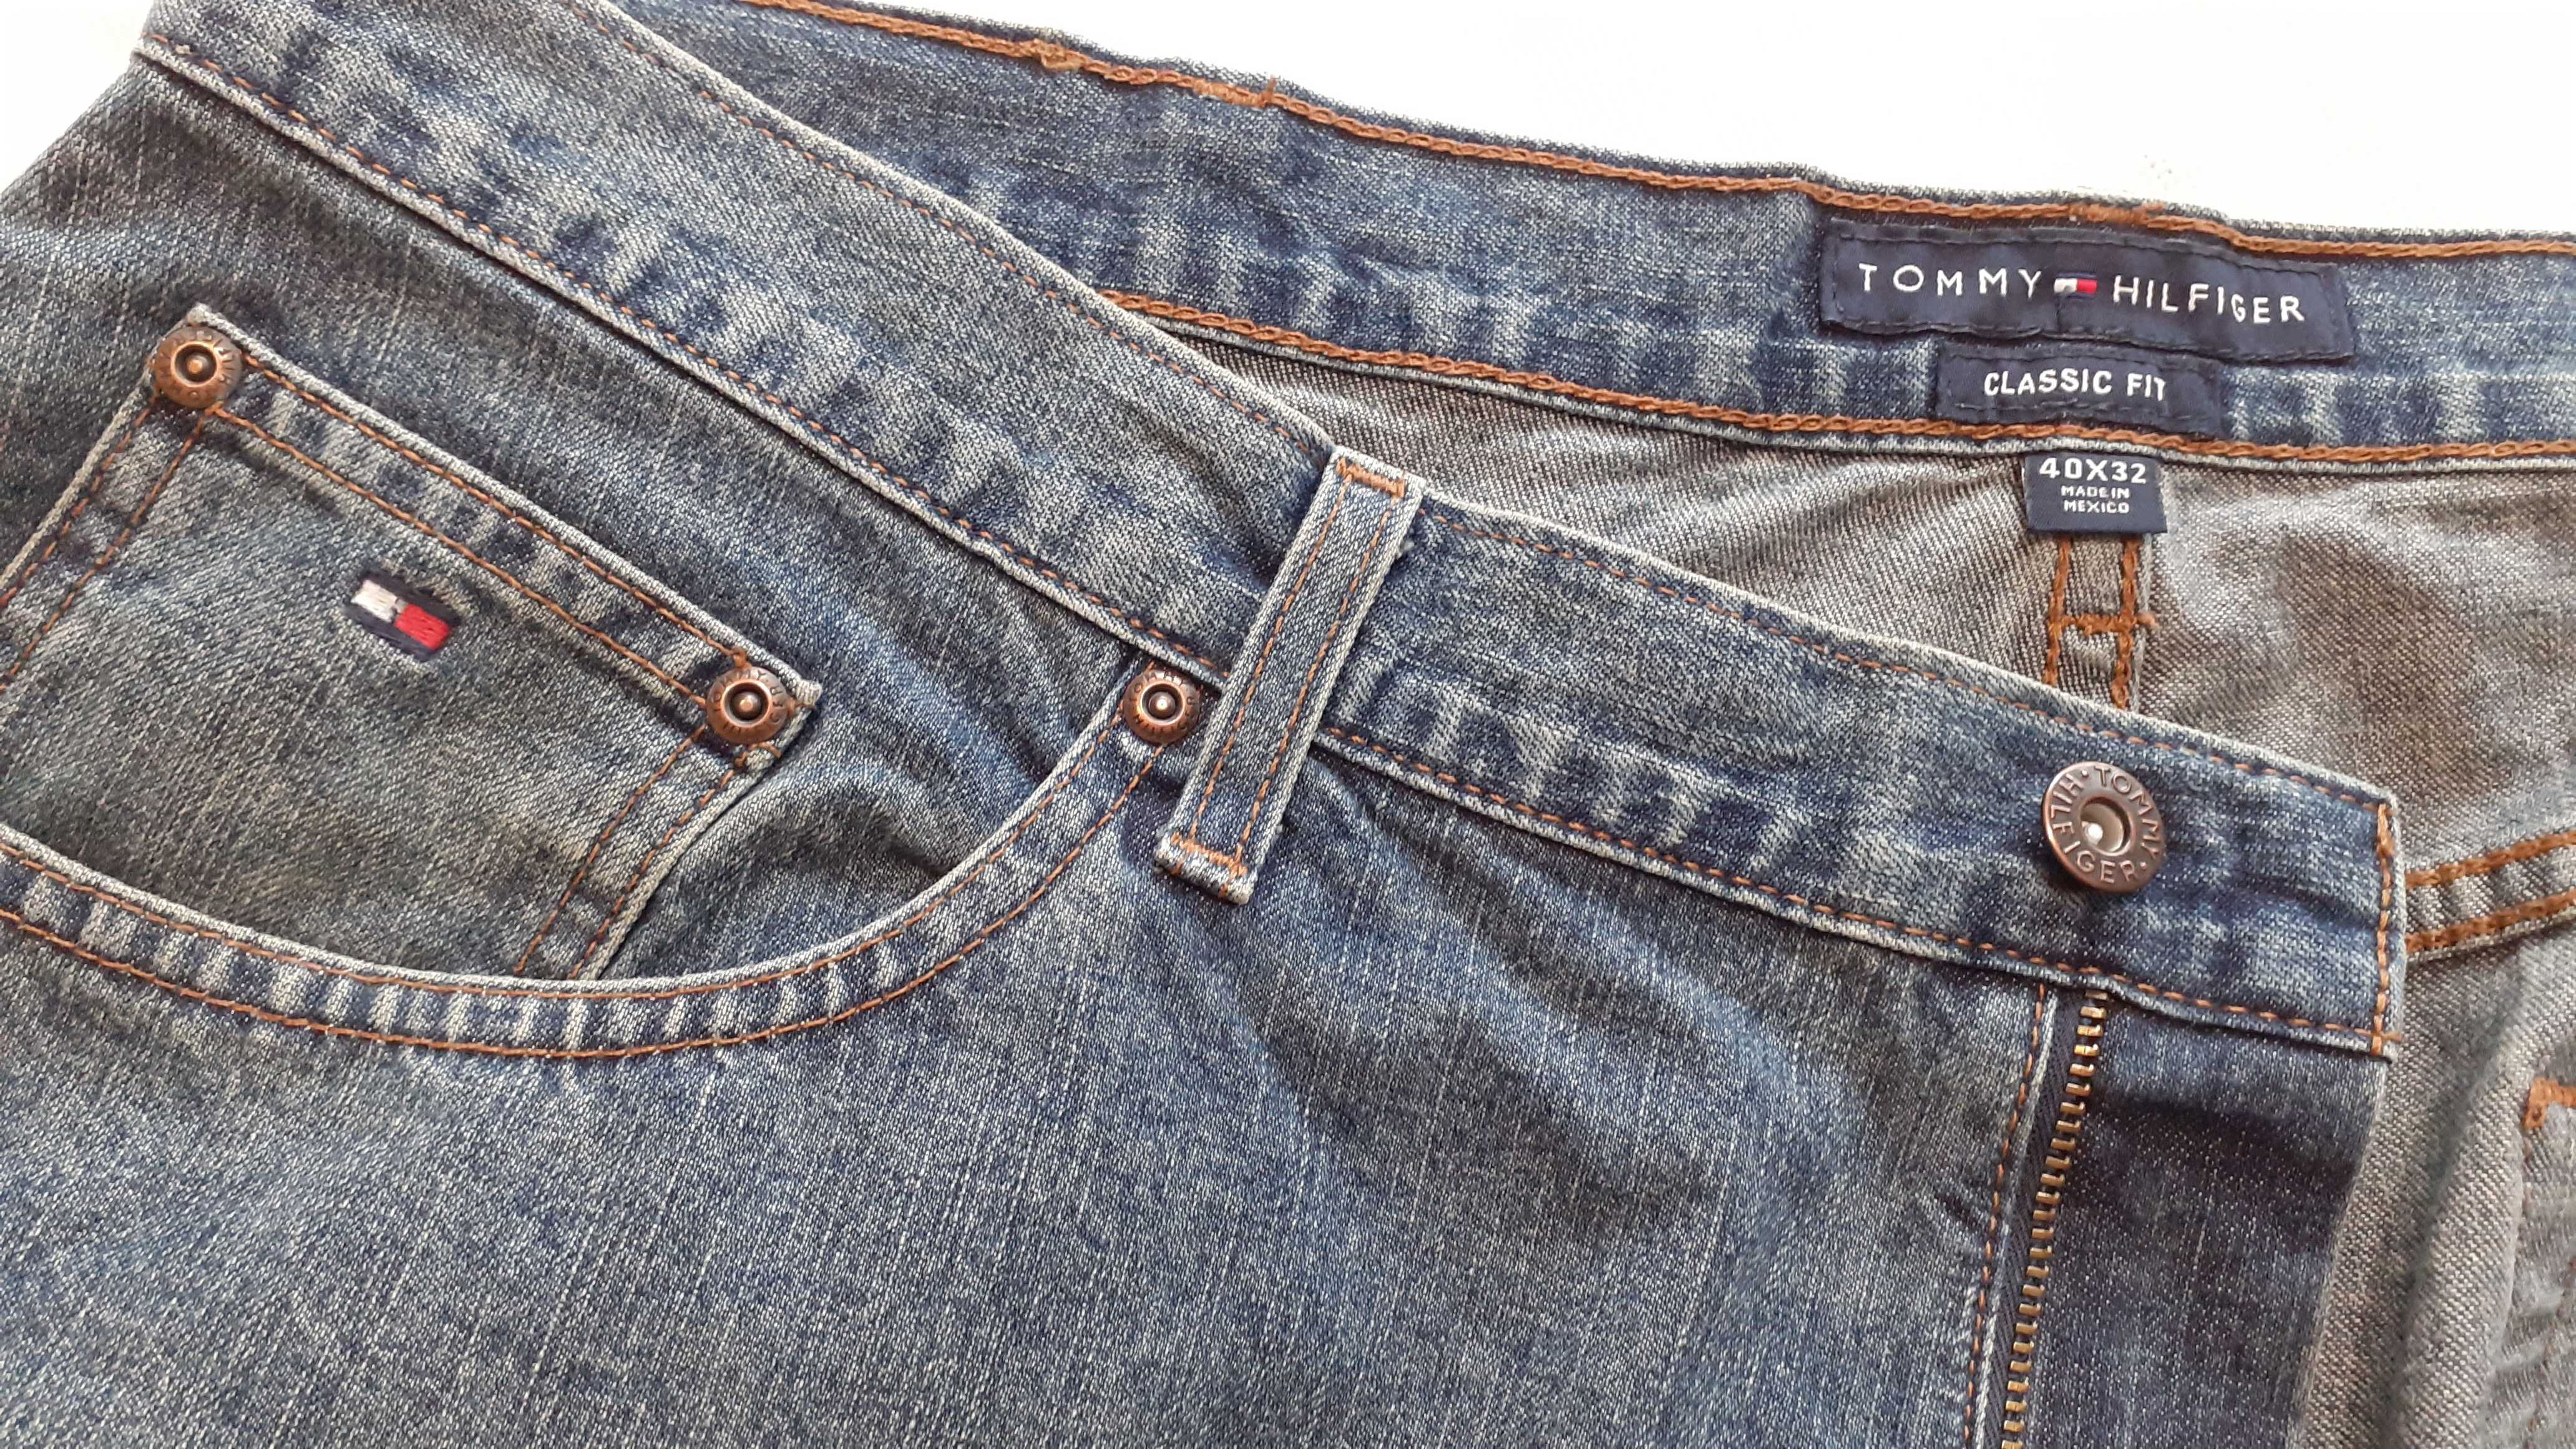 TOMMY HILFIGER 105cm 40 32 spodnie męskie jeansowe denim